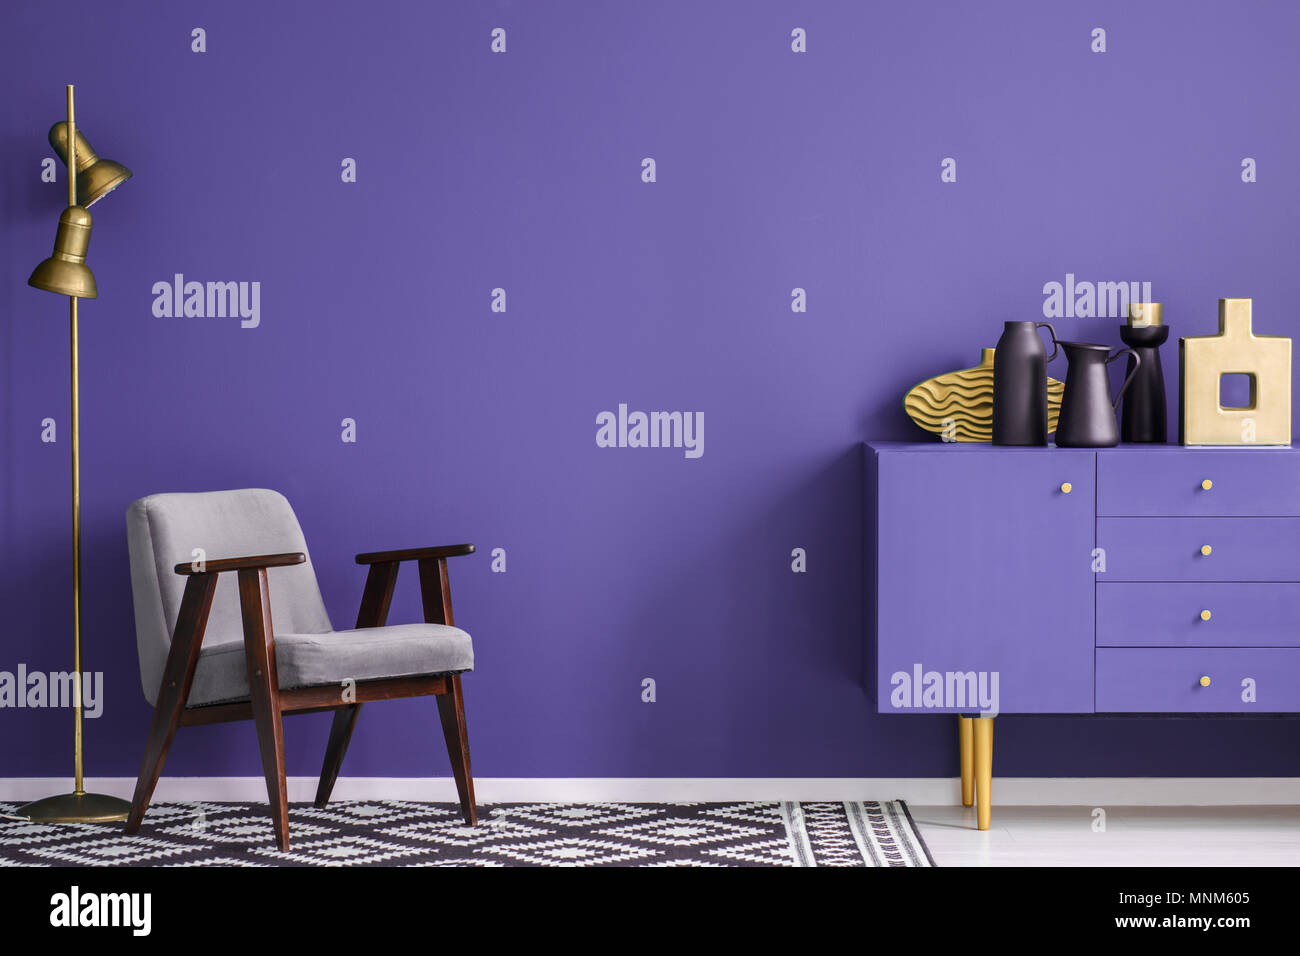 Vases noir sur violet près du cabinet fauteuil gris et la lampe dans le salon intérieur avec des tapis à motifs Banque D'Images